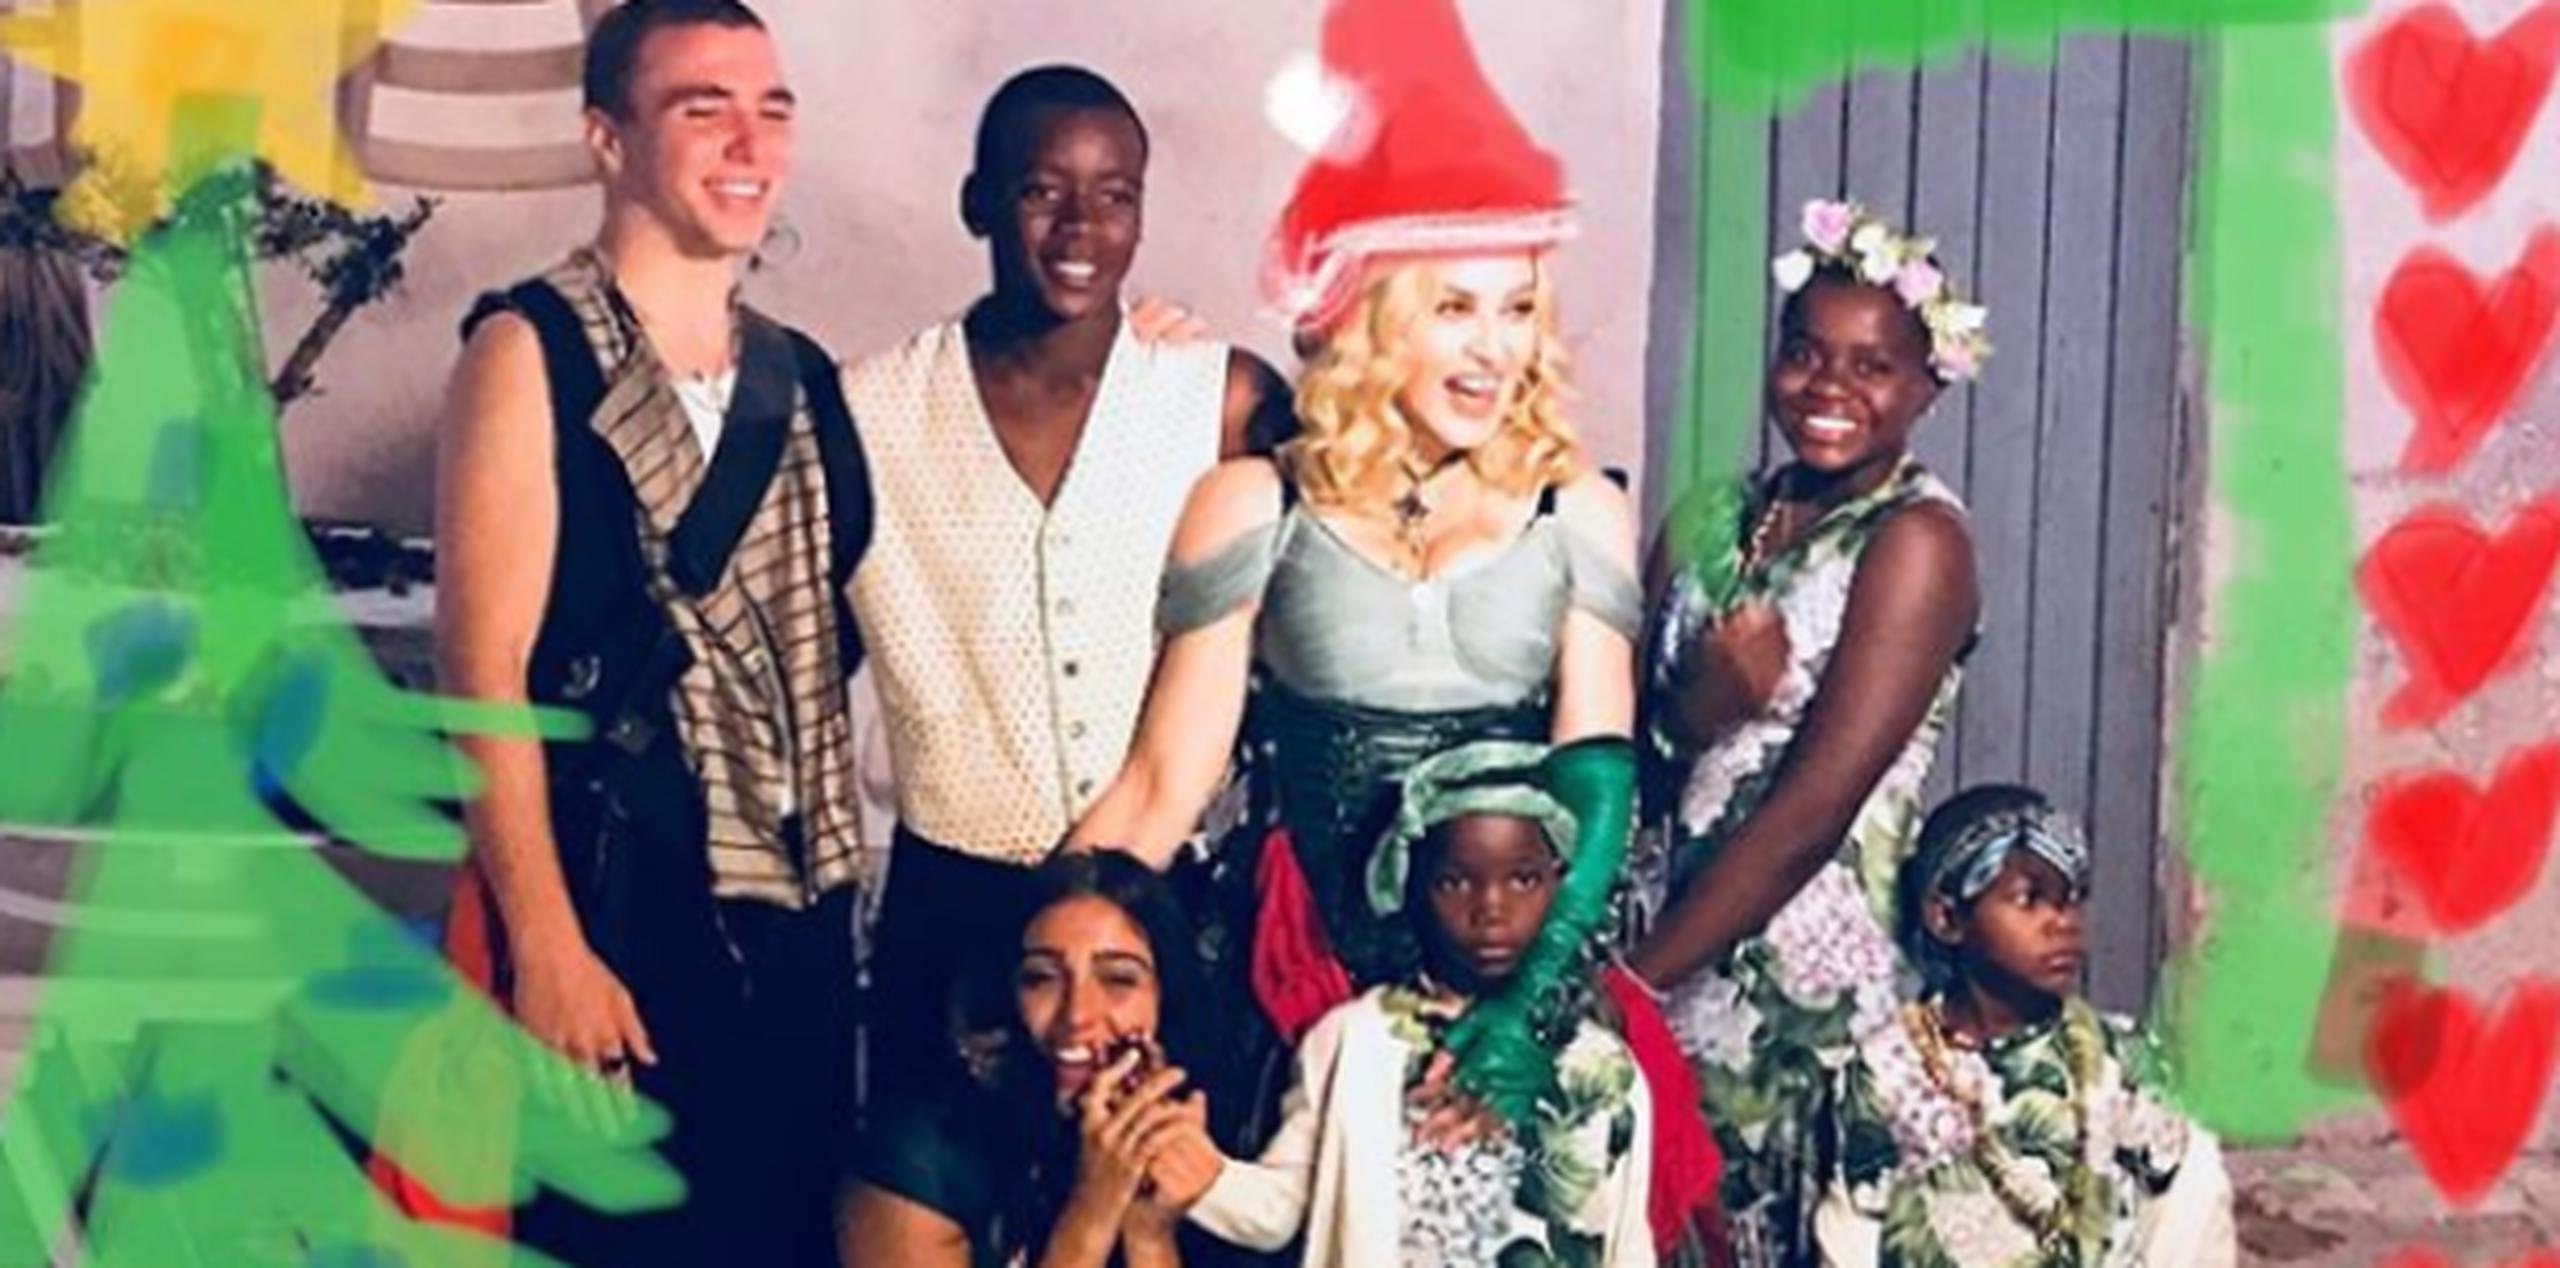 Madonna en buena compañía: sus hijos. Stella y Estere, quienes recientemente se sumaron a su familia tras proceso de adopción, tuvieron en 2017 su primera Navidad. (Foto: Instagram)